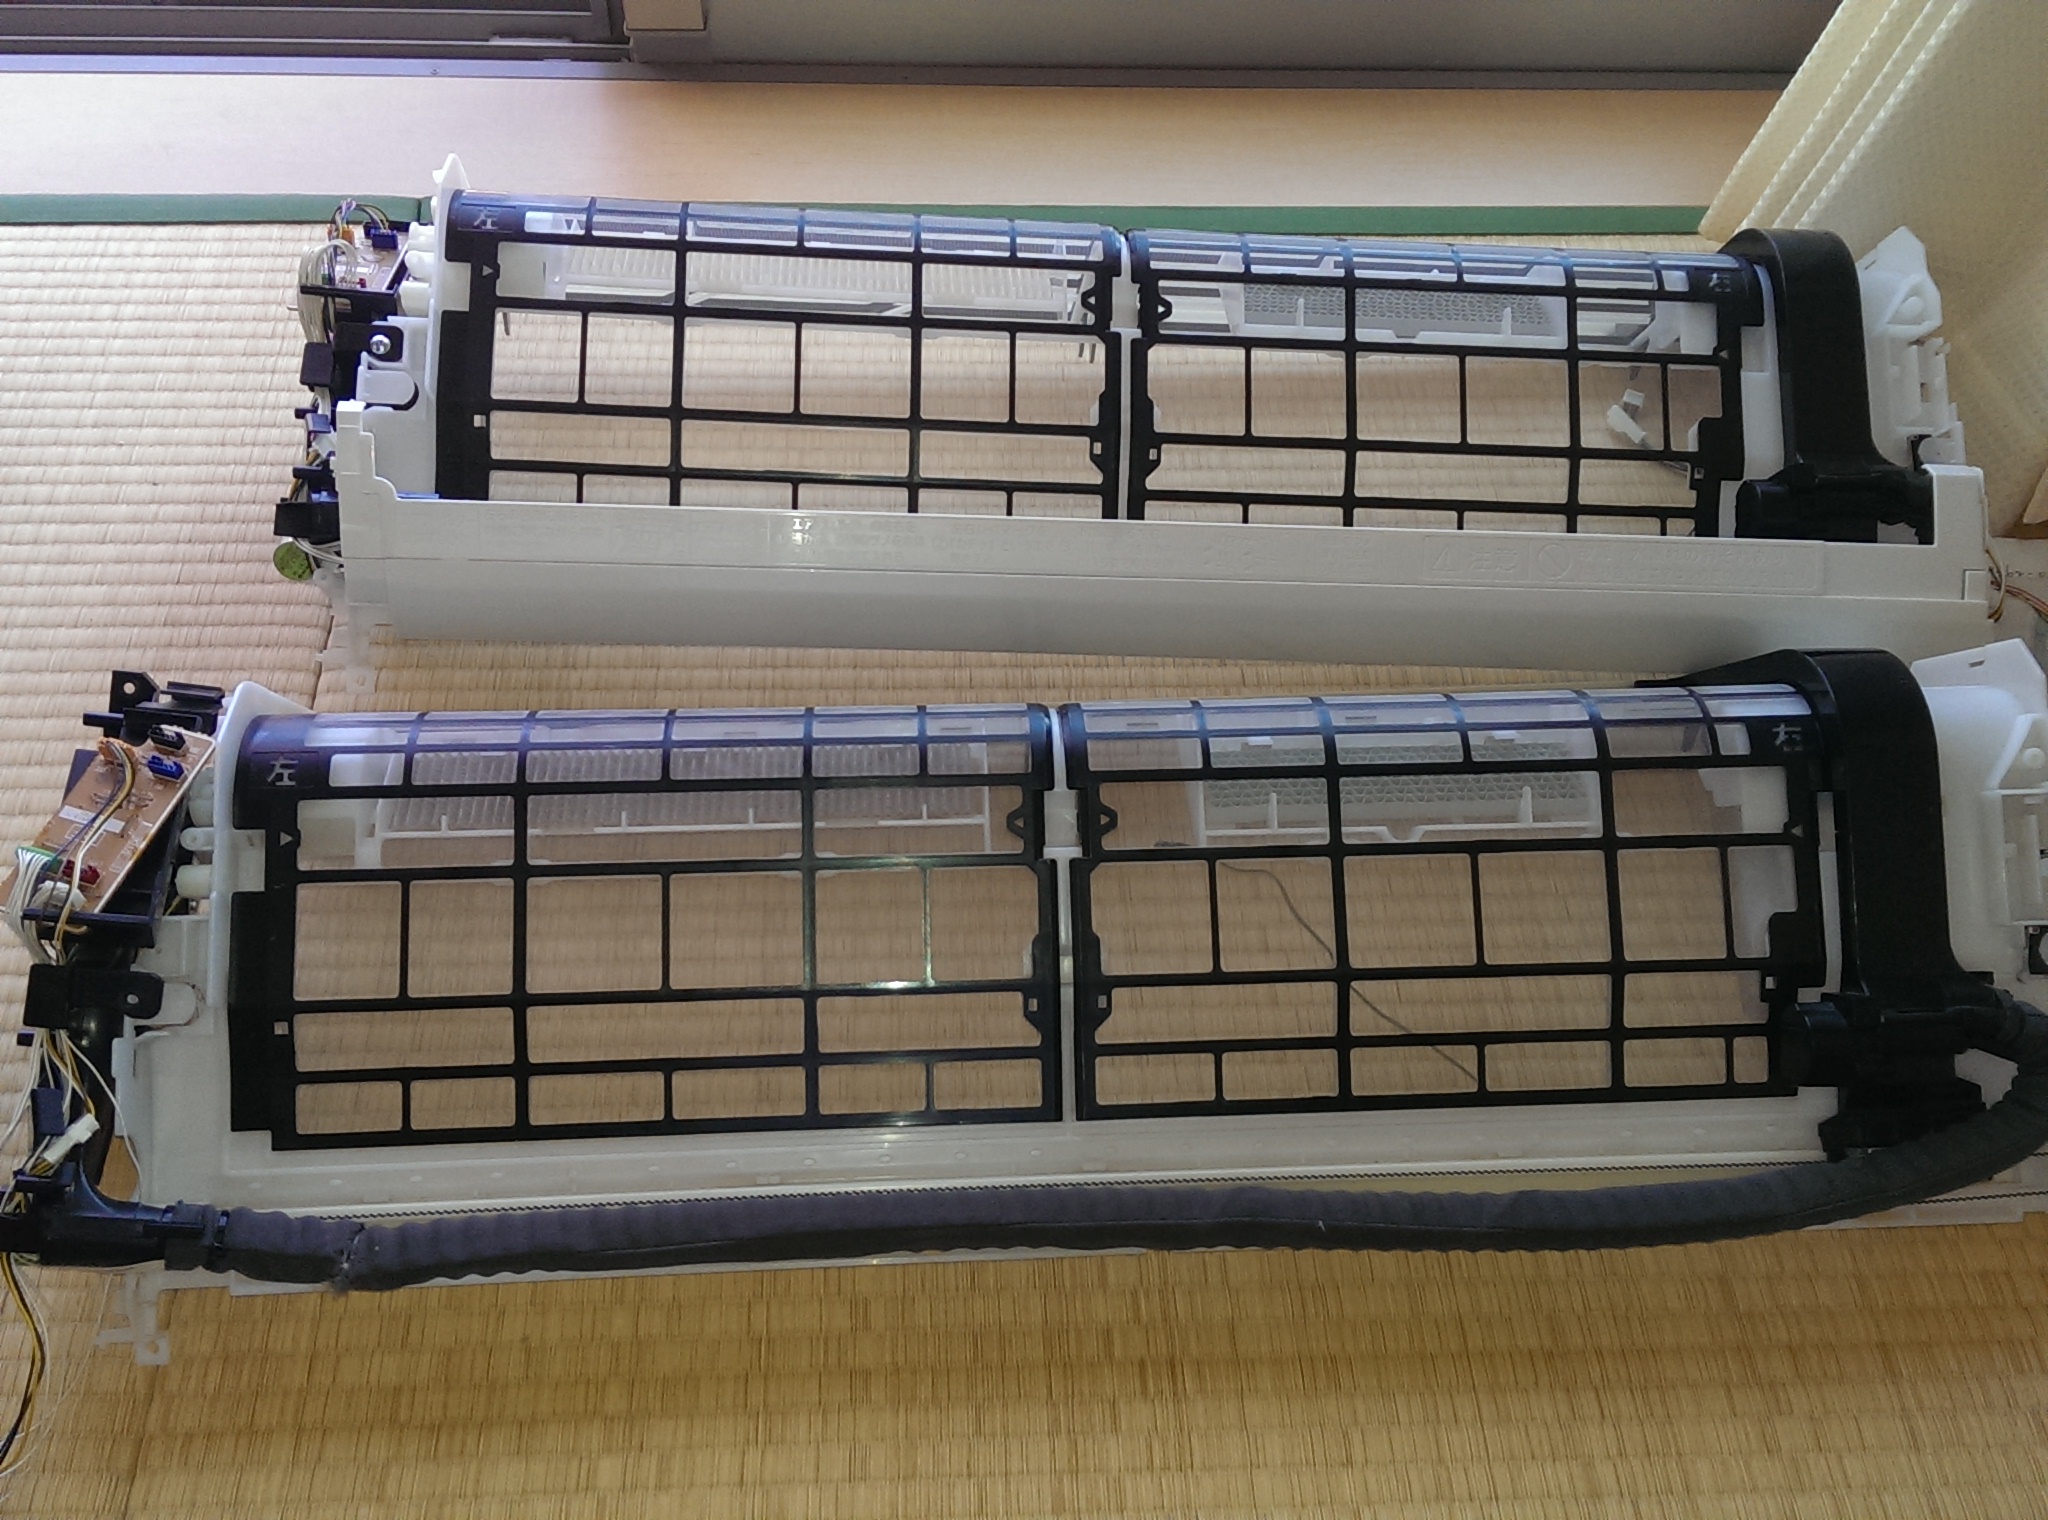 名古屋市港区南陽 ナショナル(パナソニック)エアコンH51エラー自動掃除機能不具合修理